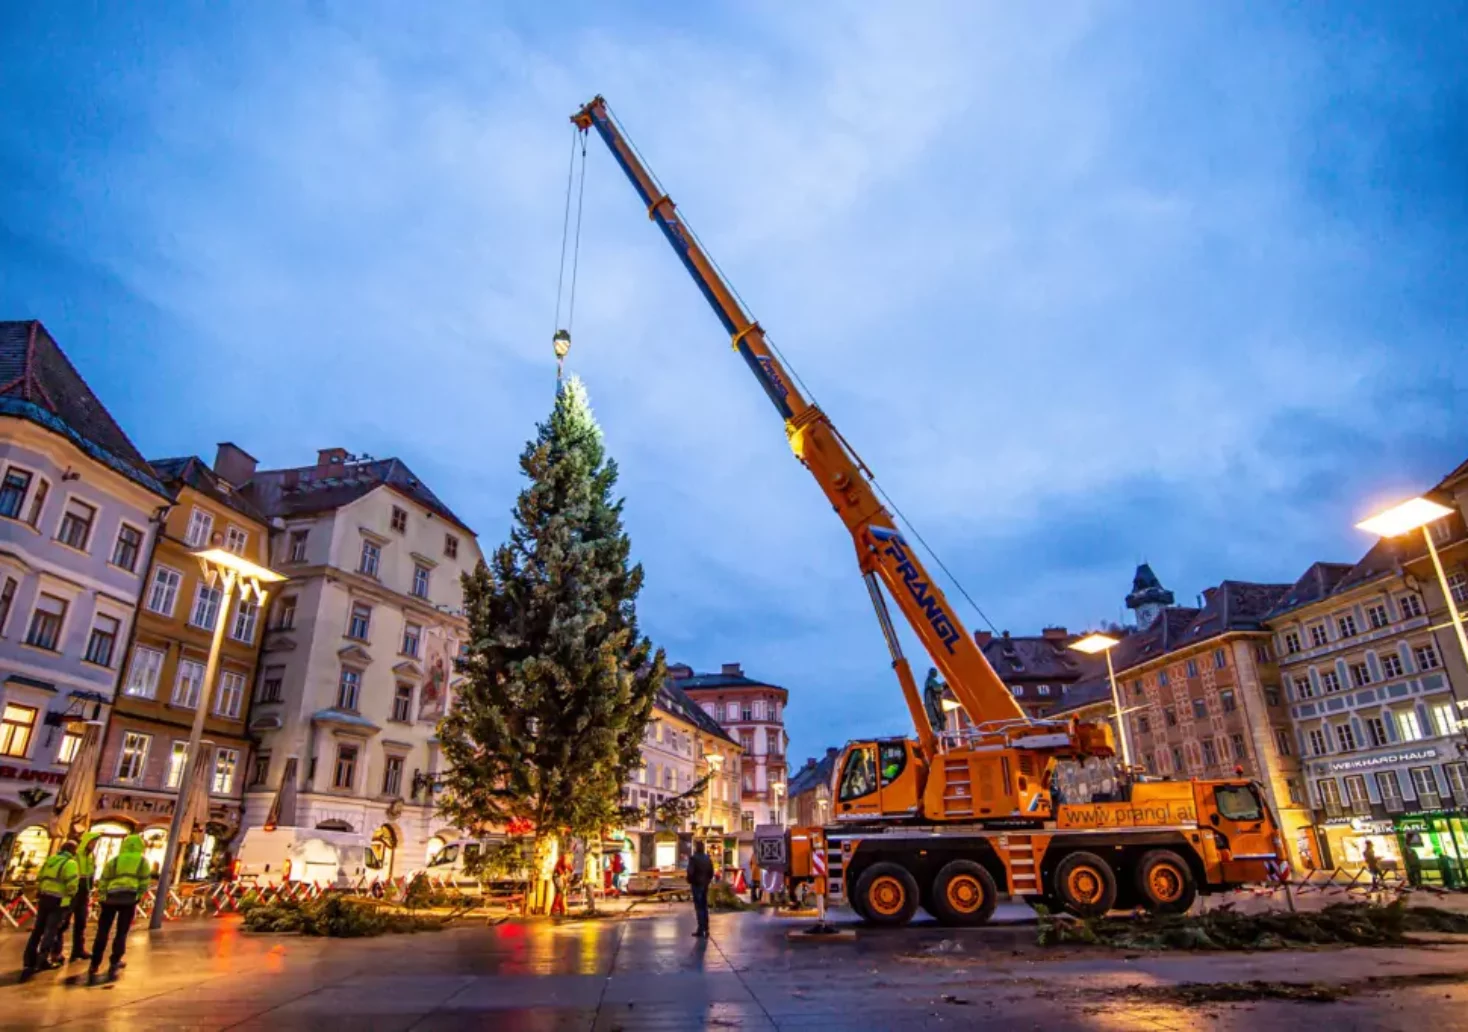 Bild auf 5min.at zeigt, wie der Christbaum am Grazer Hautplatz errichtet wird.